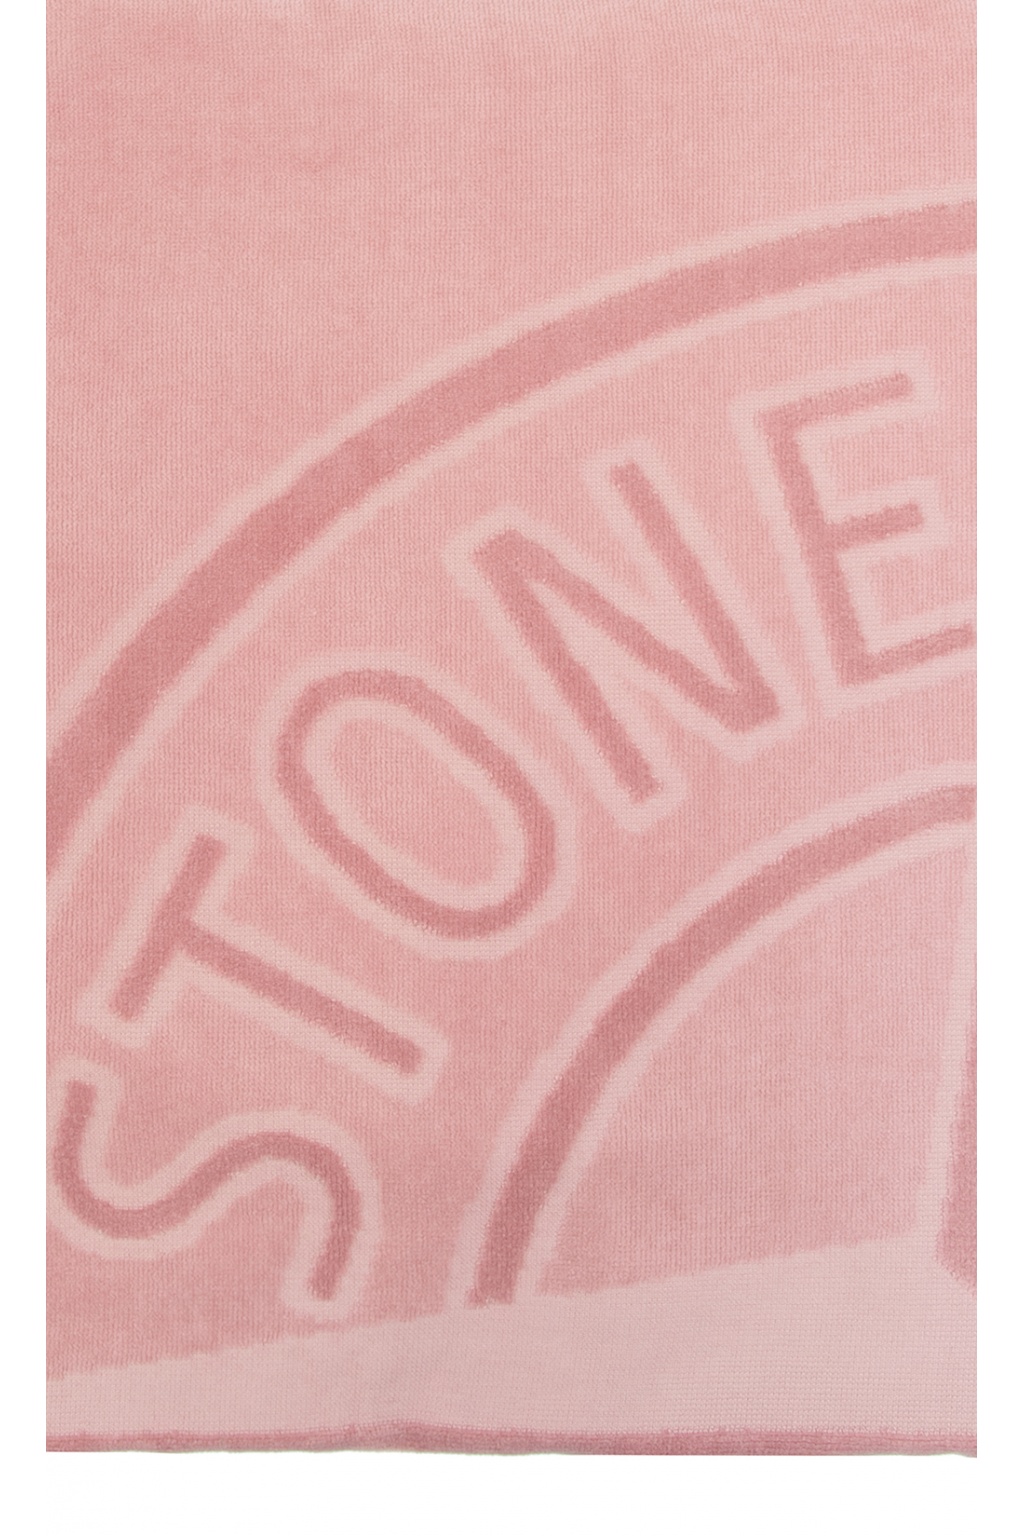 Stone Island Towel with logo